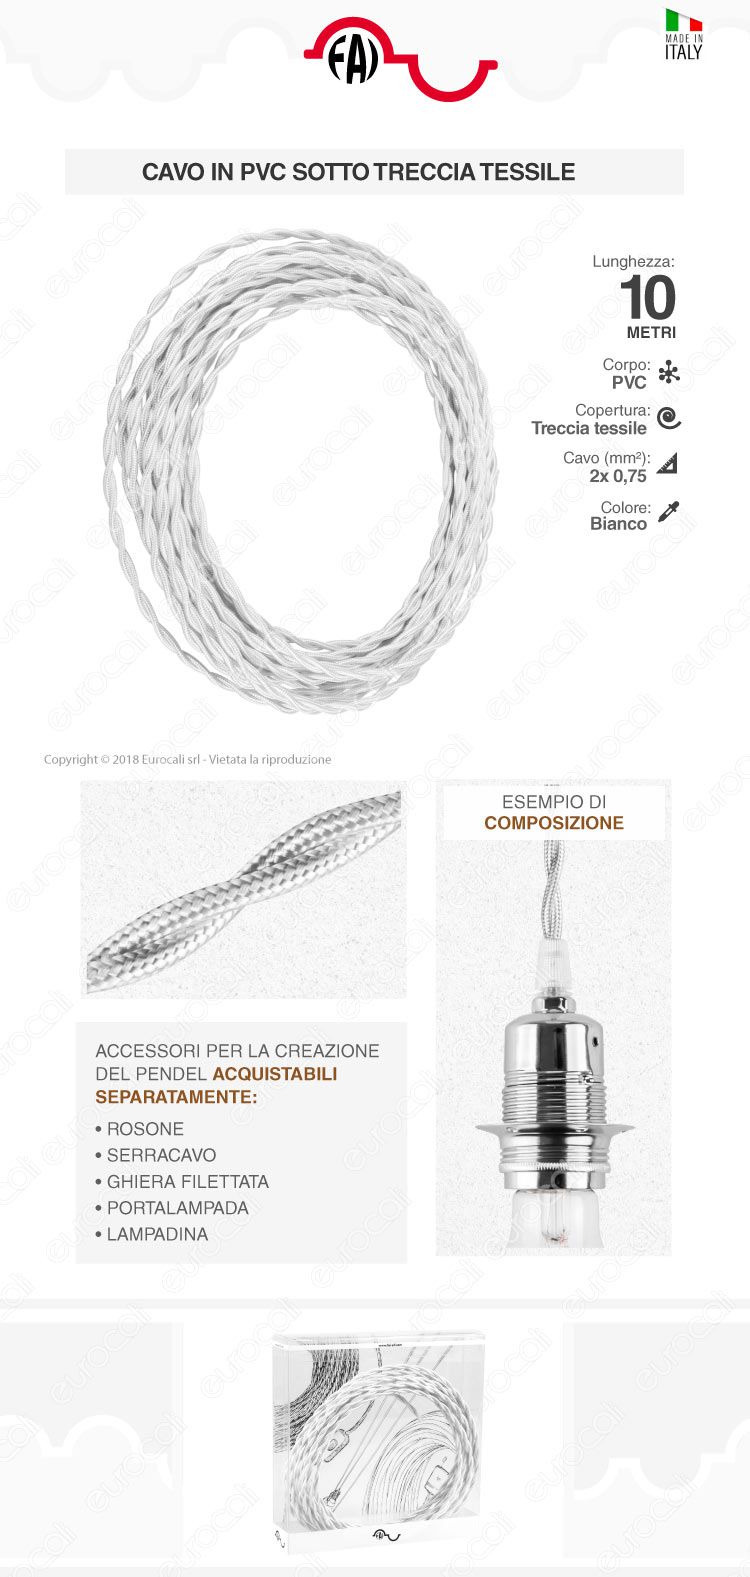 Cavo di Collegamento Elettrico in Corda Intrecciata per Lampade di Design FAI Bianco